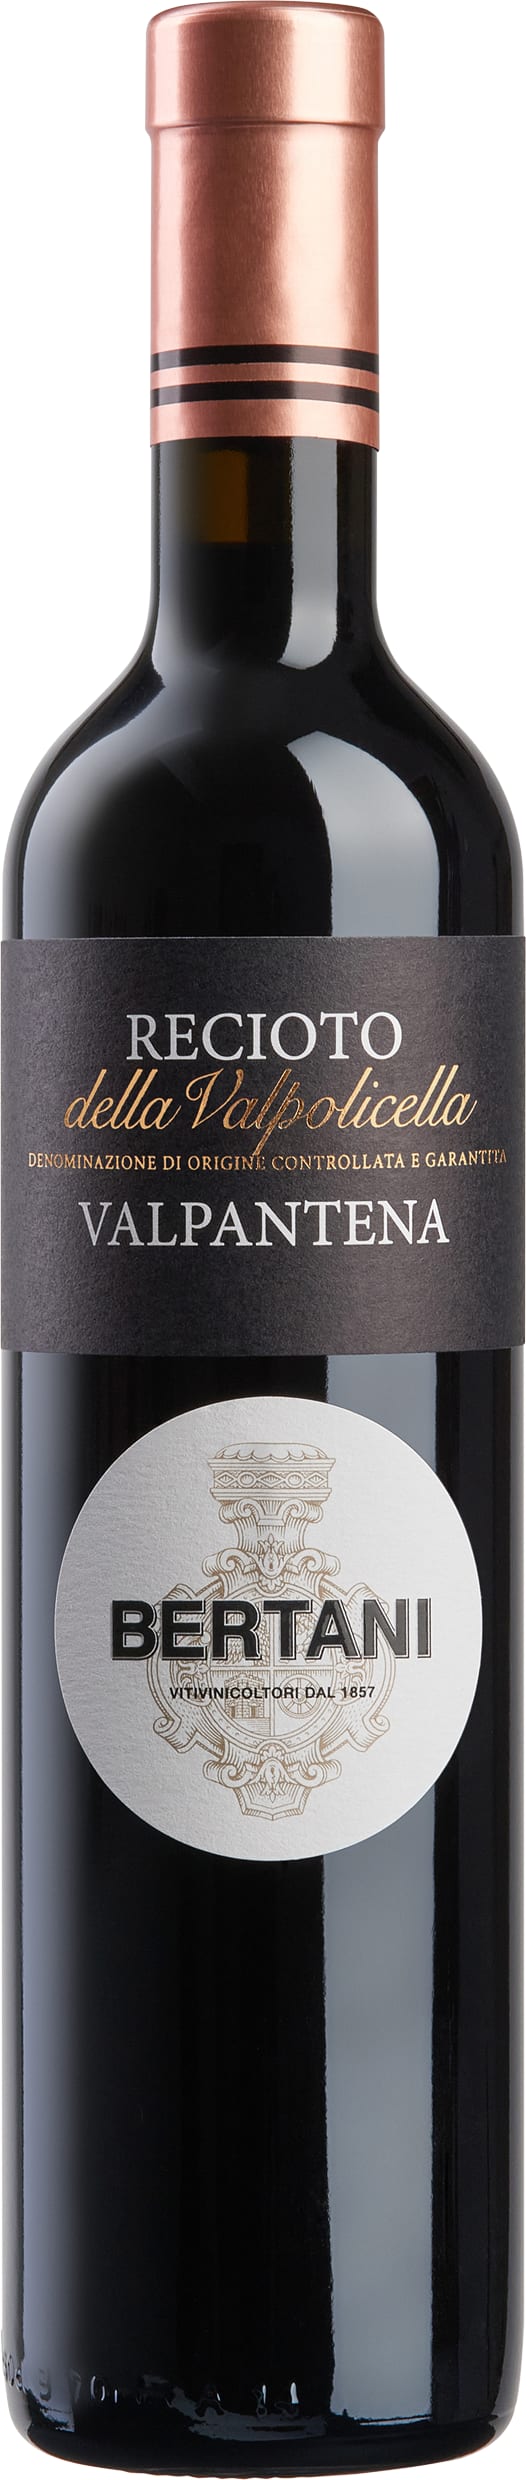 Bertani Recioto della Valpolicella DOC 2021 50cl - Buy Bertani Wines from GREAT WINES DIRECT wine shop